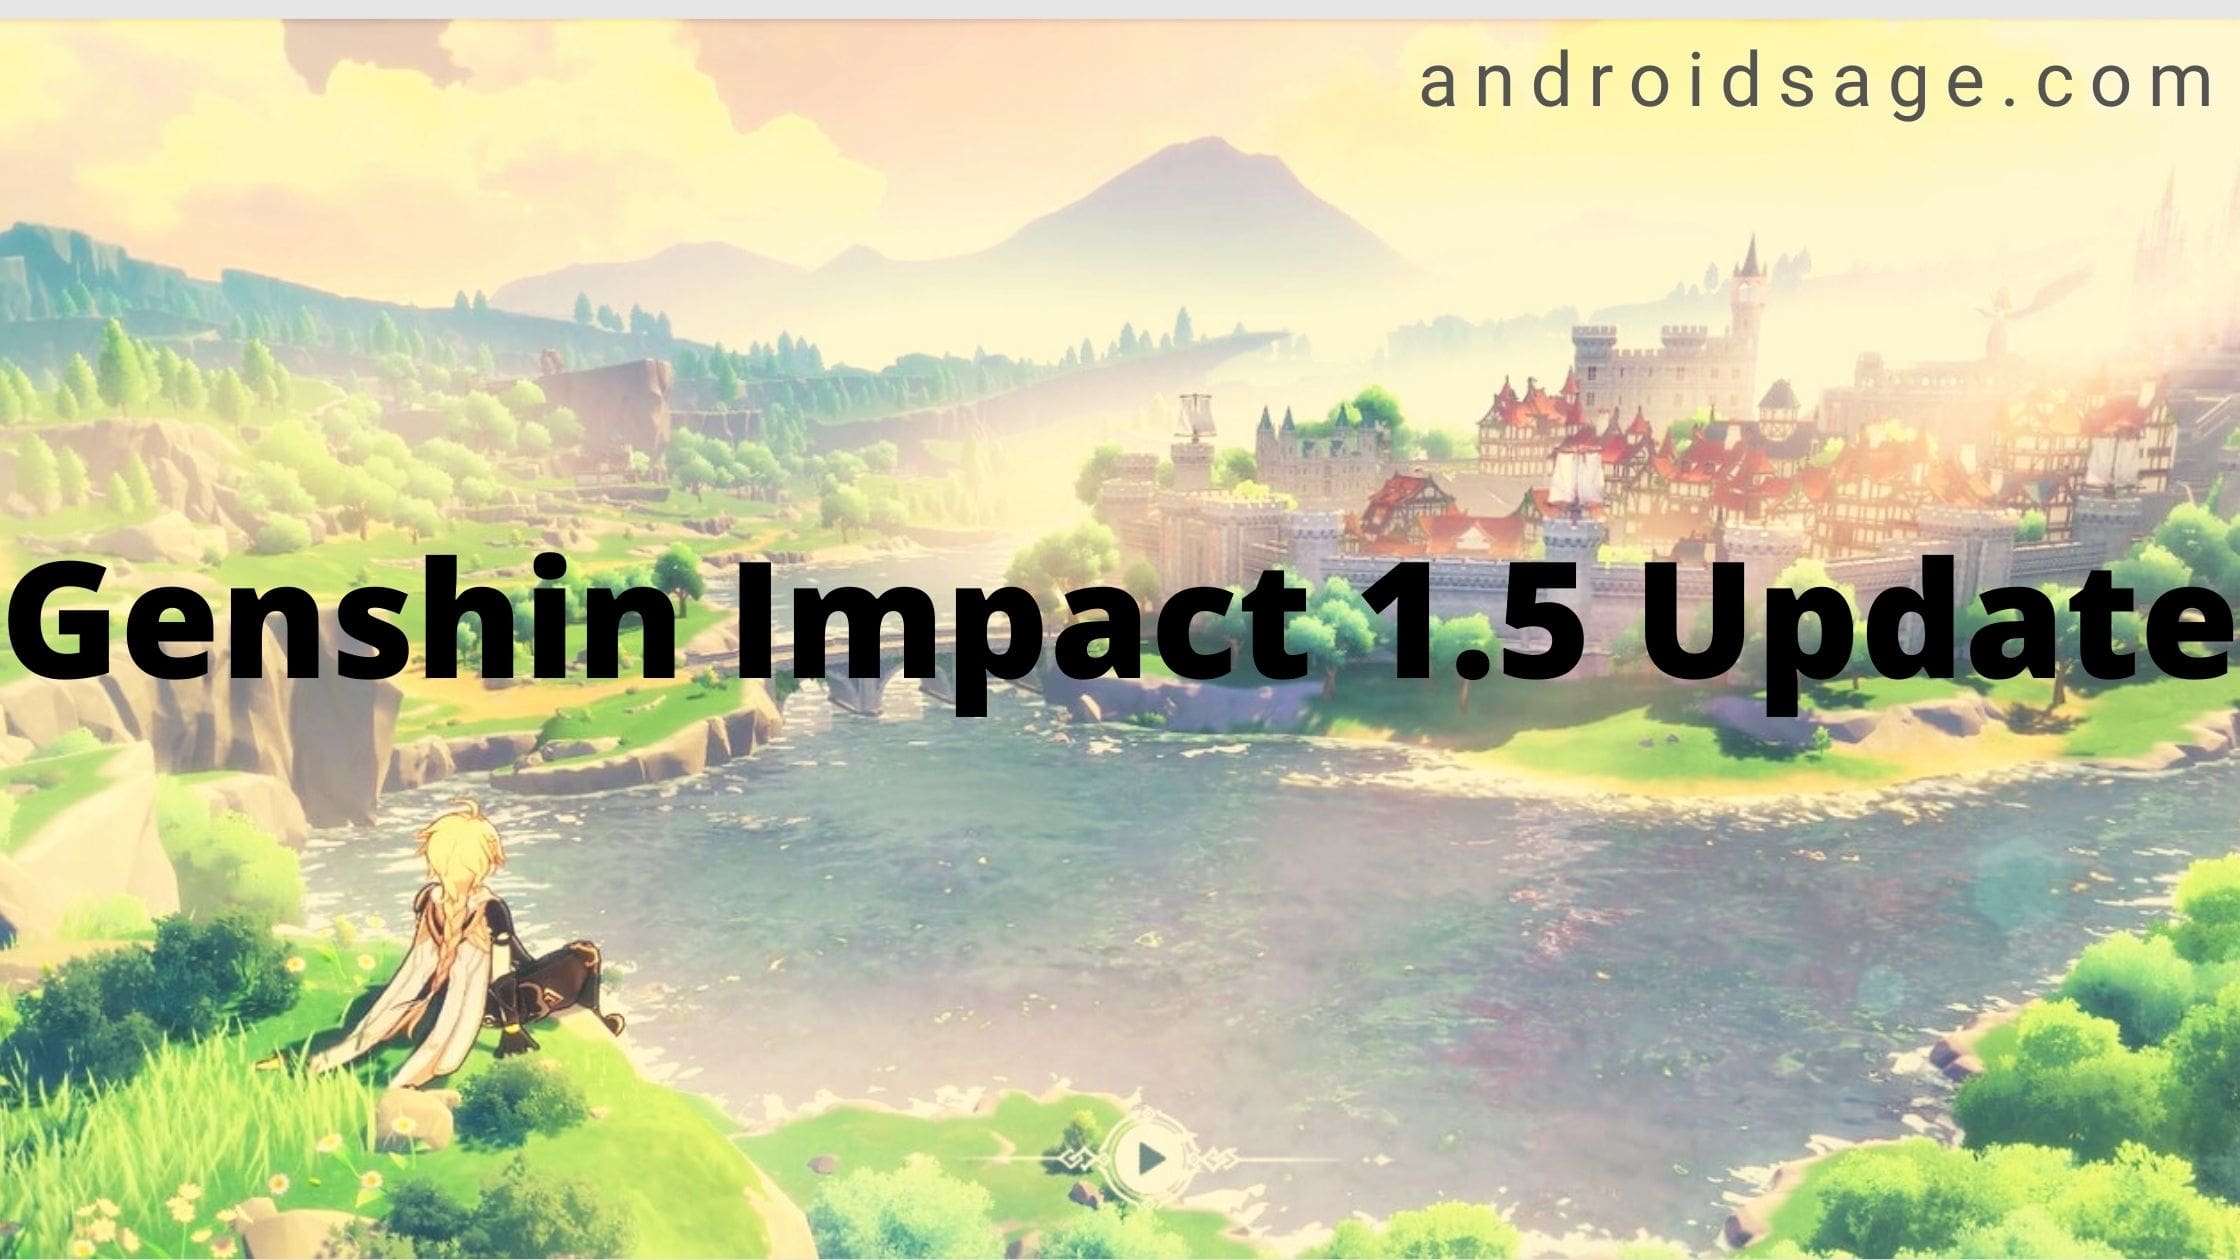 Genshin Impact 1.5 update